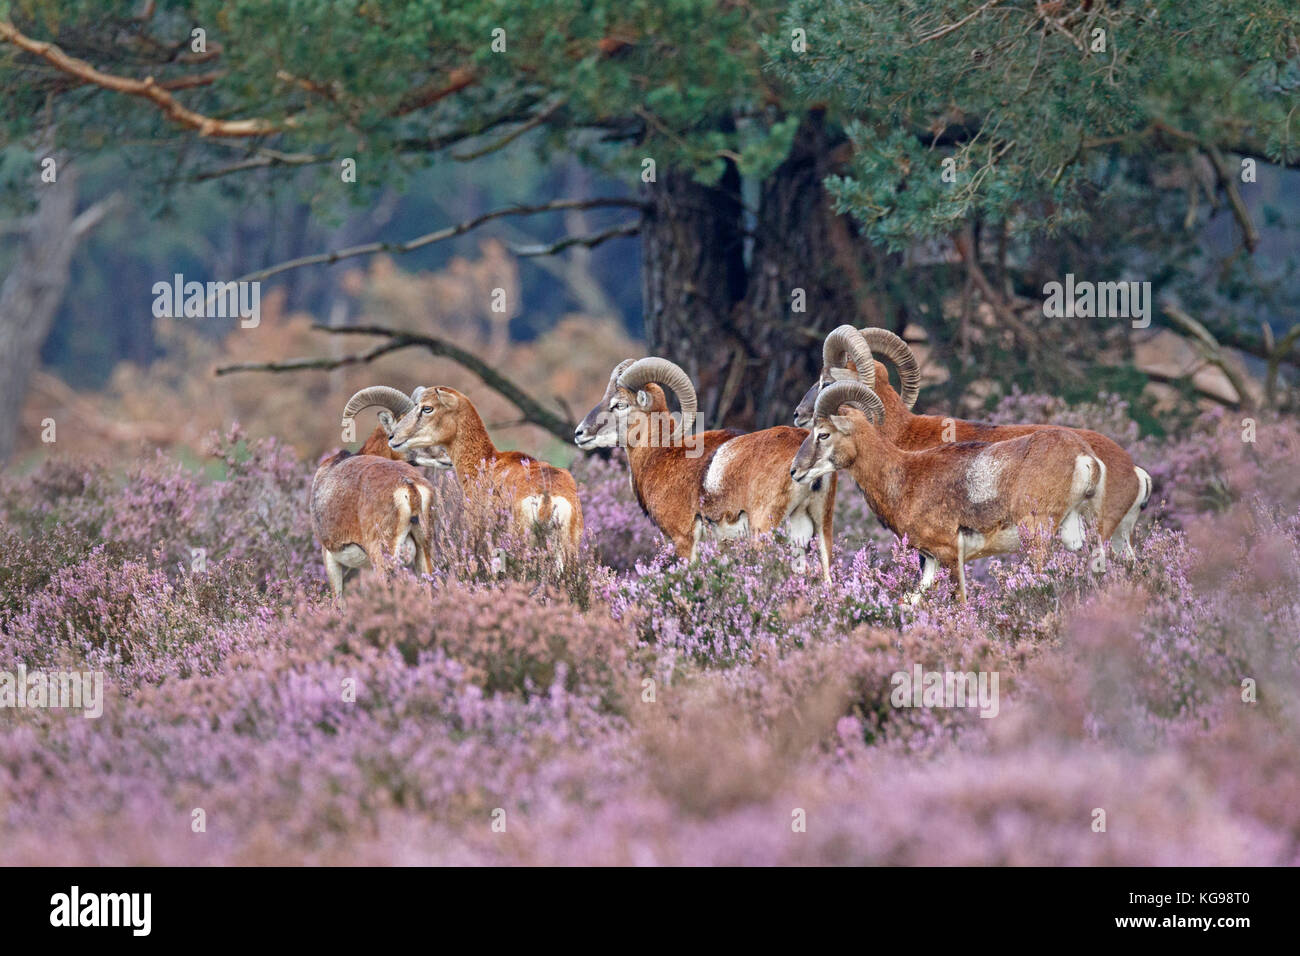 European Mouflon (Ovis orientalis musimon) Nationalpark Hoge Veluwe, Gelderland, Netherland, Europe Stock Photo